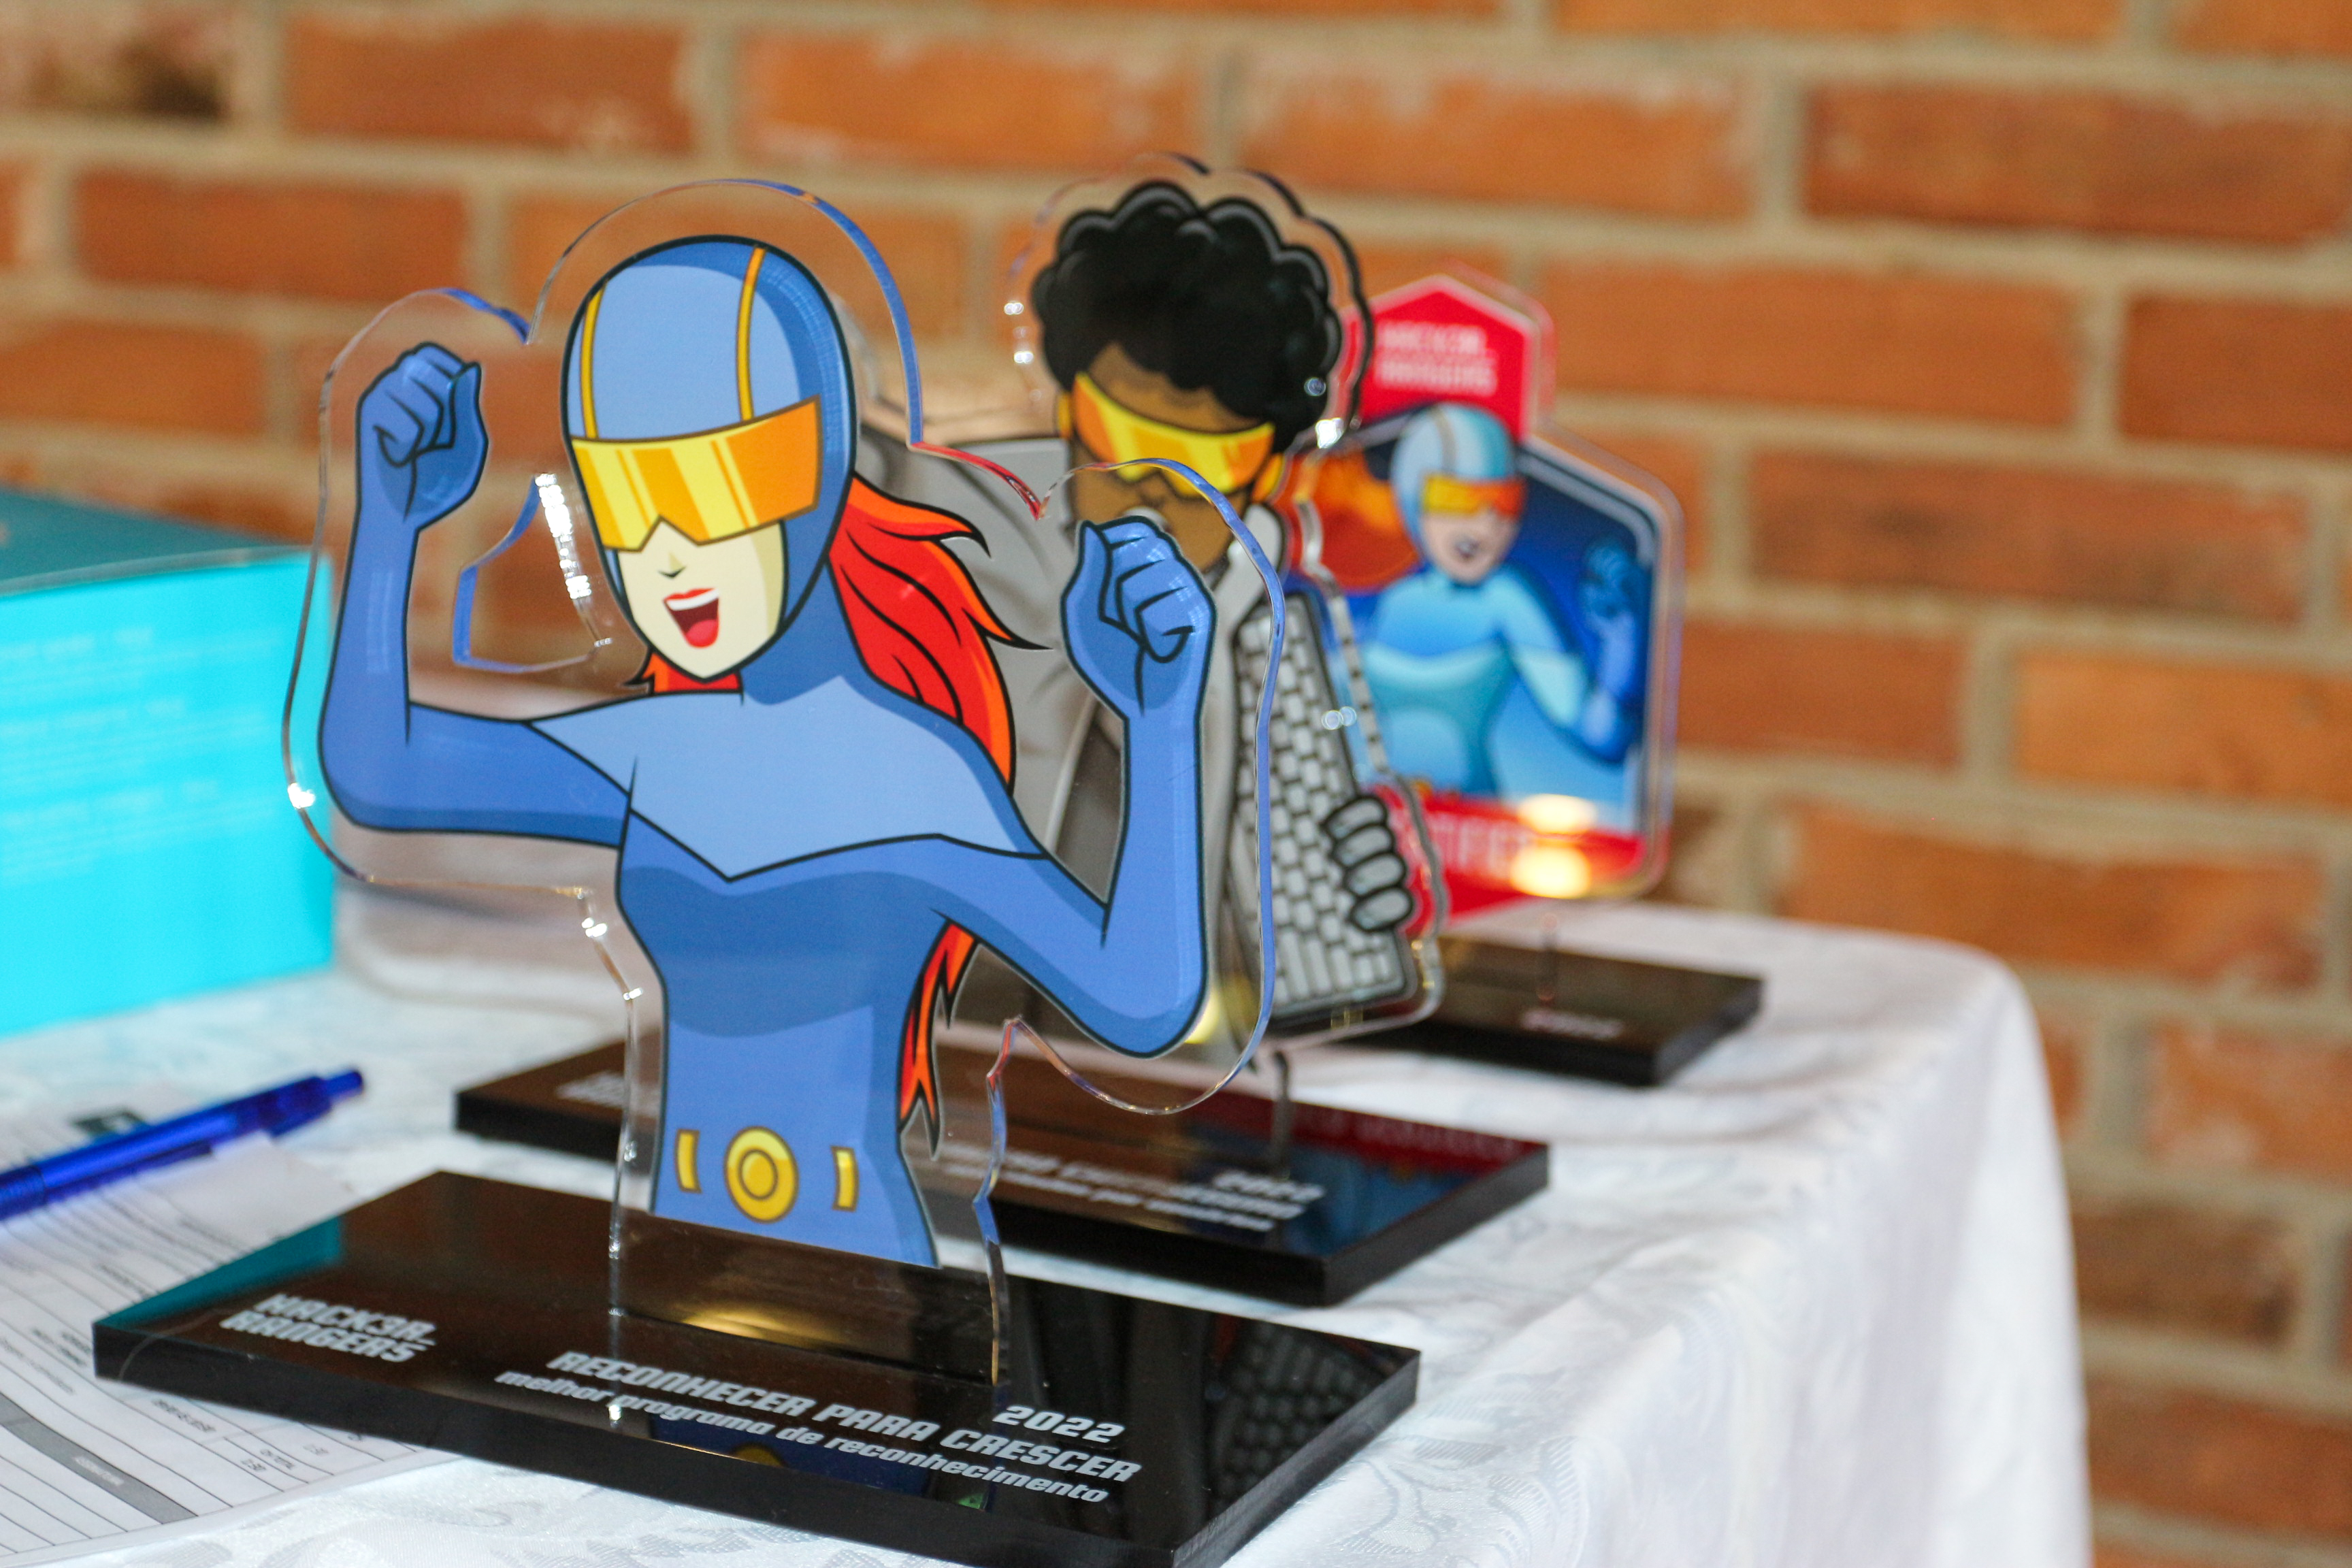 Especial Dia das Crianças: Concurso de Desenho dos Personagens do Hacker  Rangers 